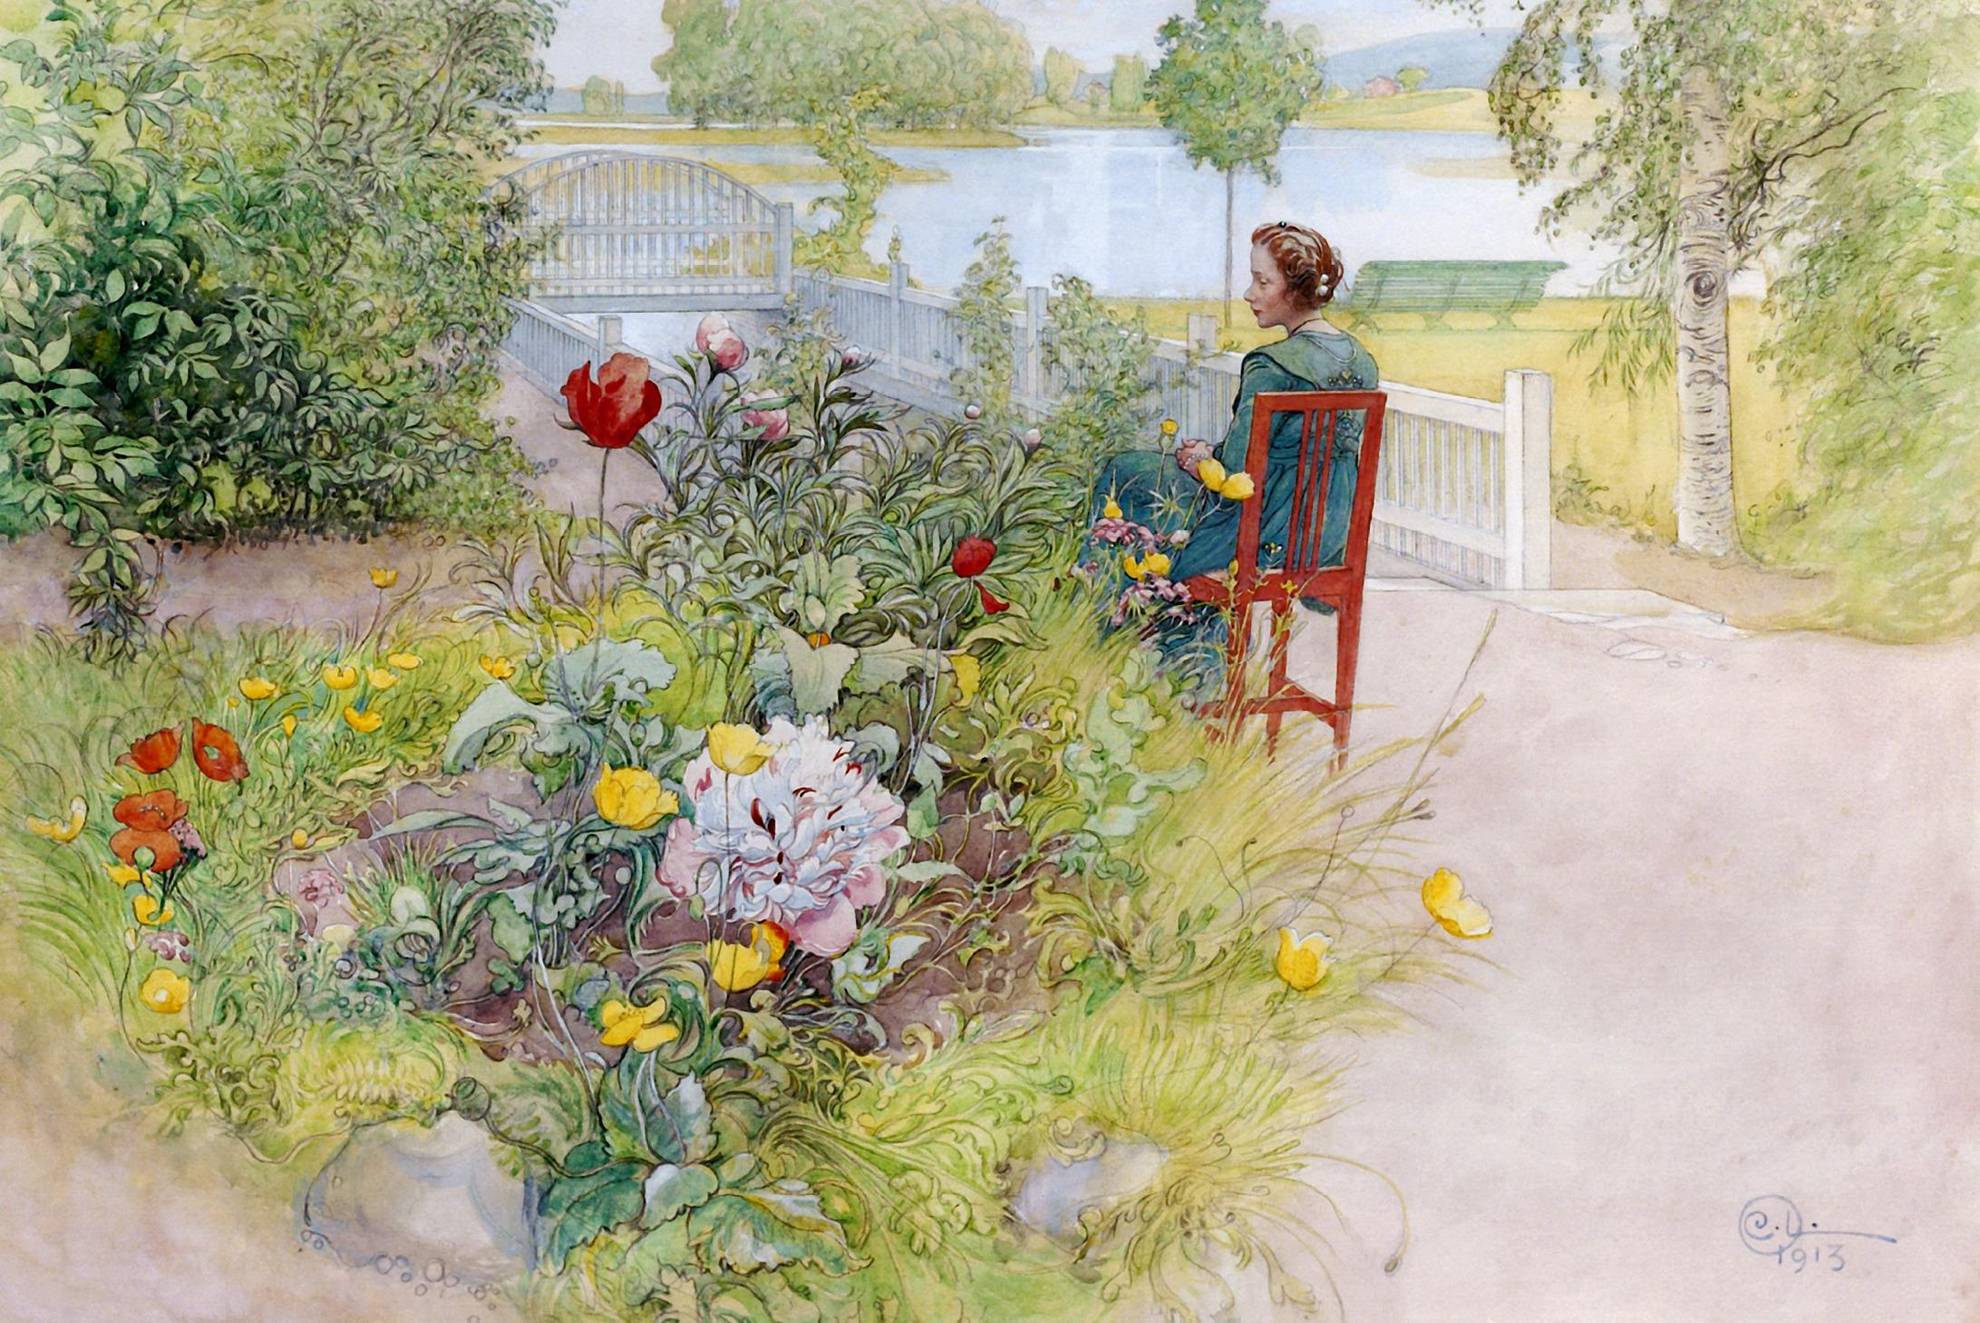 Zeichnung eines Gartens mit  Pflanzen und Blumen und Gehwegen, auf dem eine Frau auf einem Stuhl sitzt. Im Hintergrund ein See.